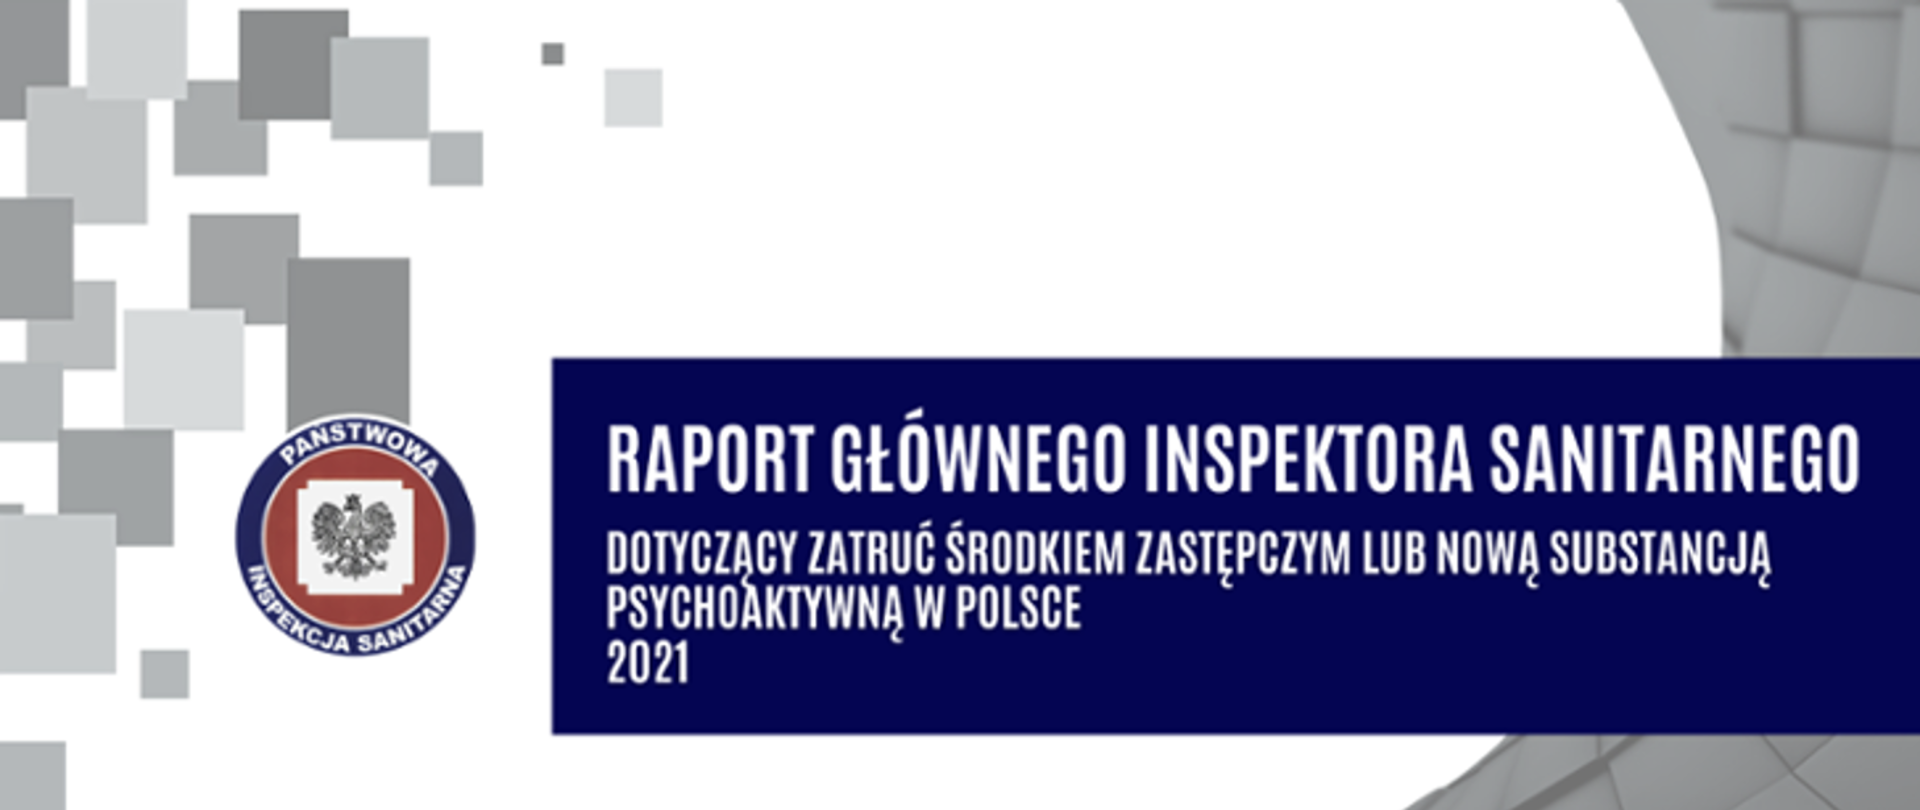 Raport Głównego Inspektora Sanitarnego dotyczący zatruć środkiem zastępczym lub nową substancją psychoaktywną za 2021 rok